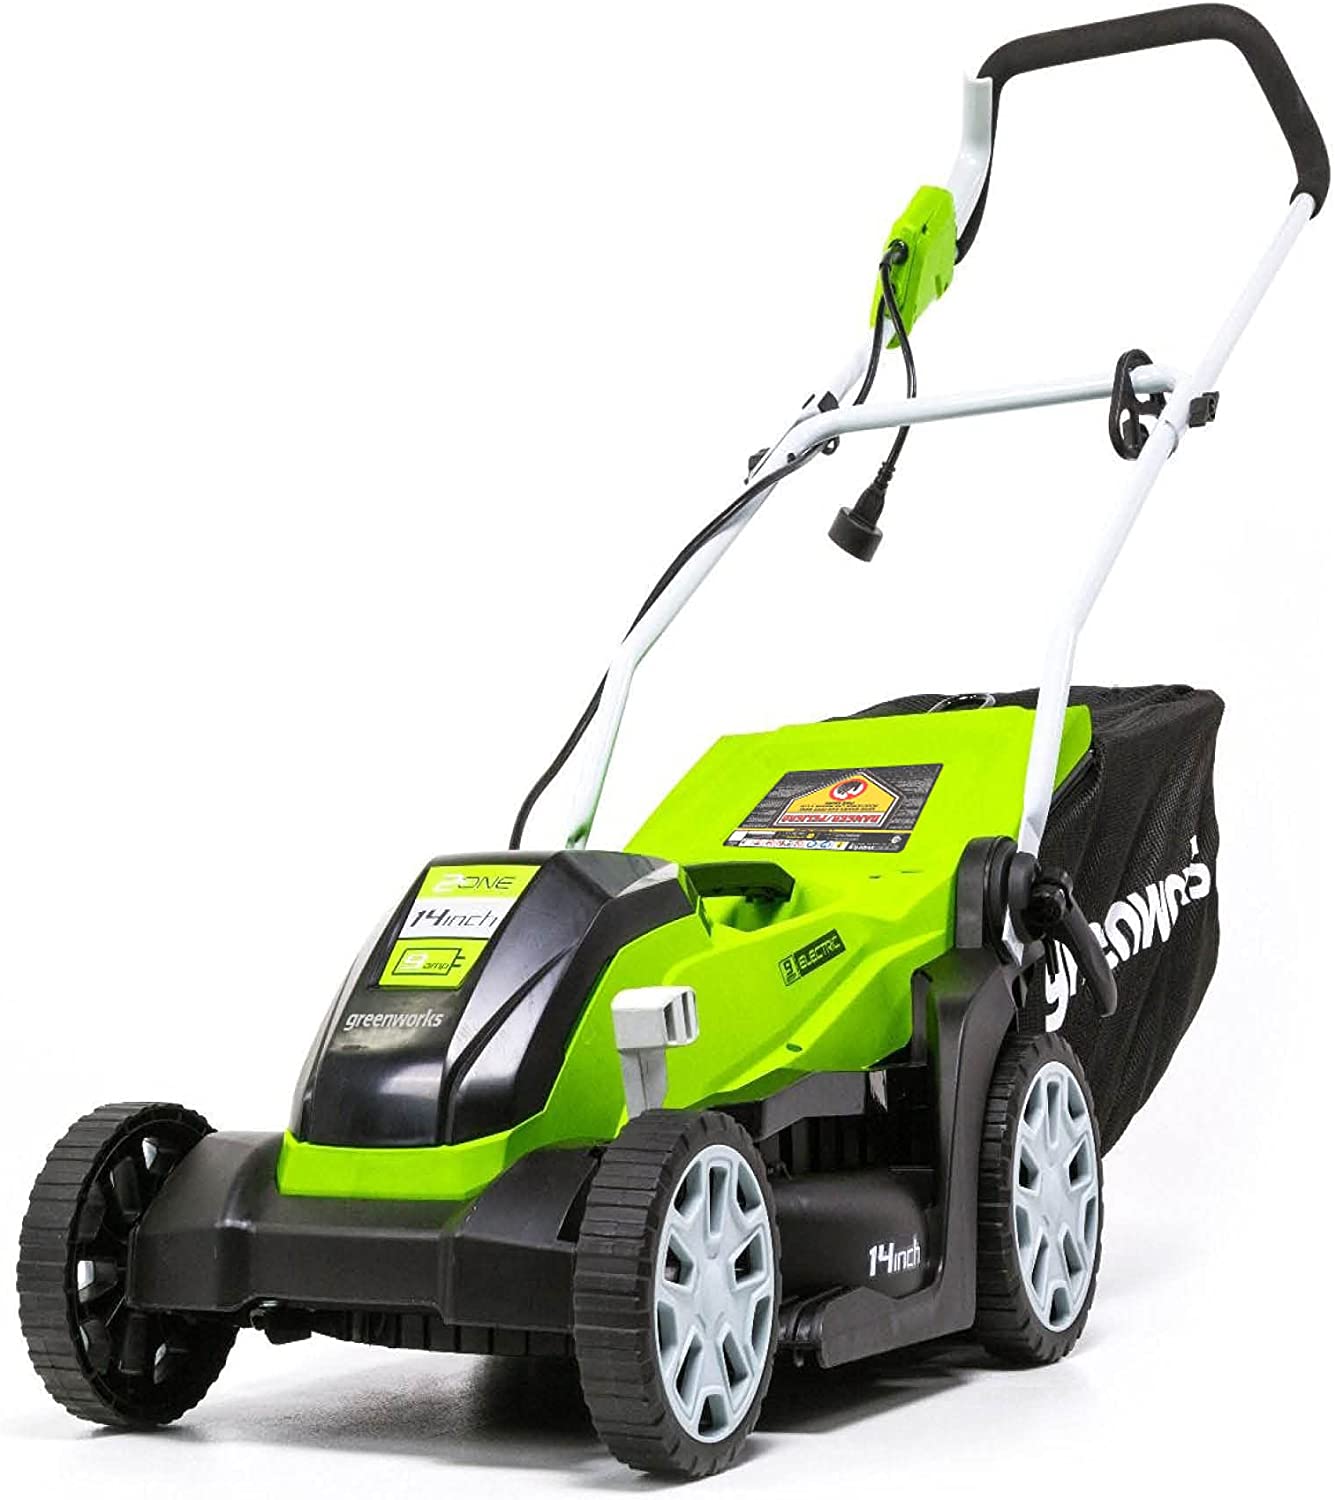 Greenworks lawnmower under $300